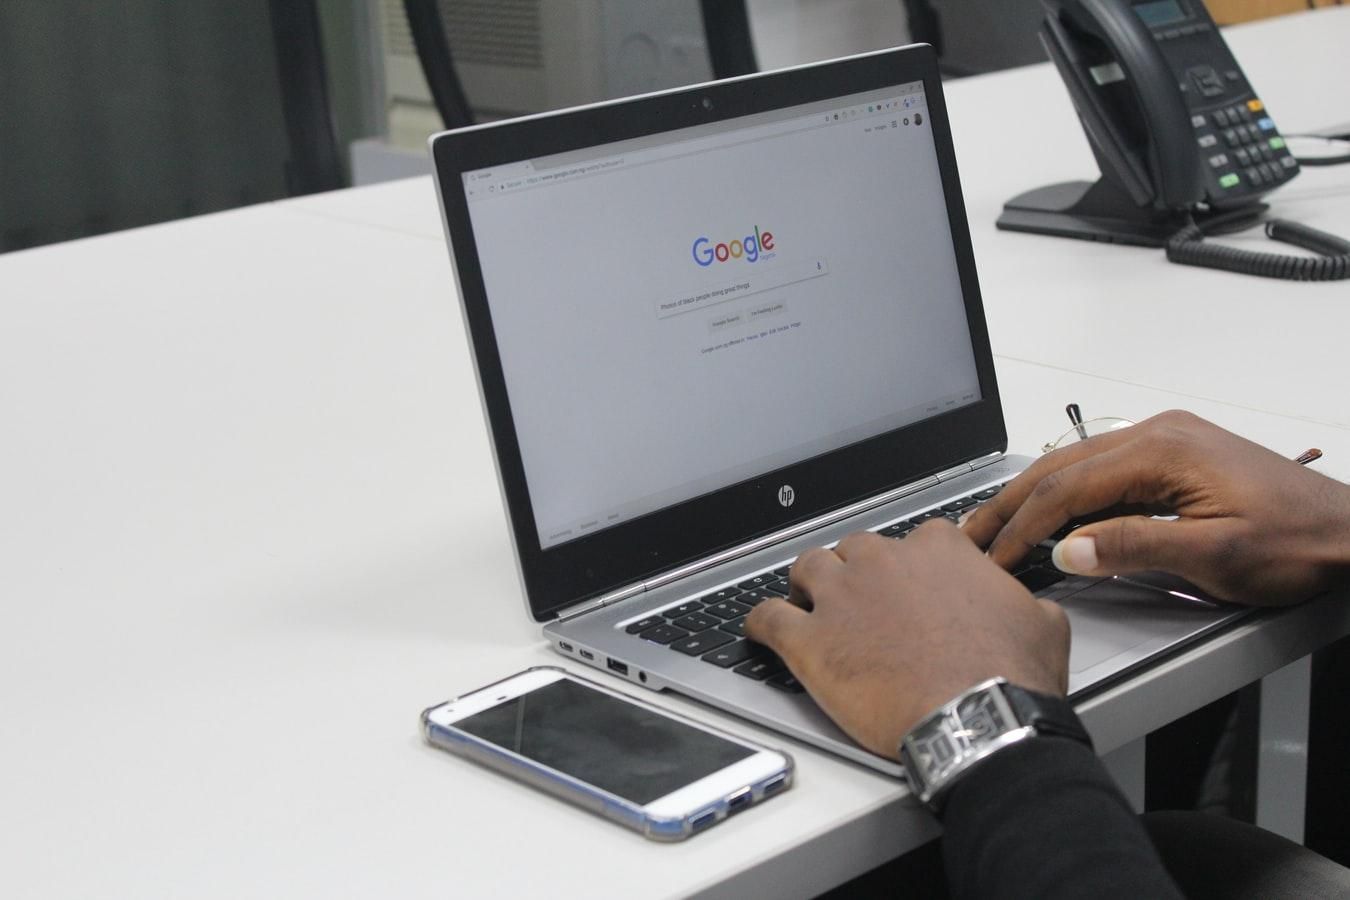 Слежка за пользователями возмущала даже работников Google: внутренняя переписка